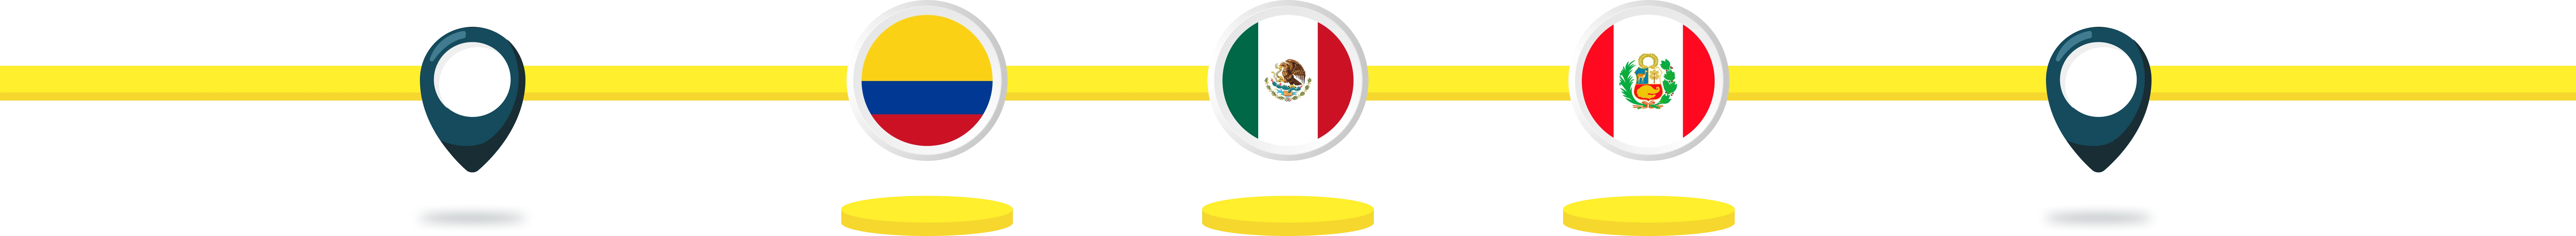 Servicios de logística y transporte Colombia y México